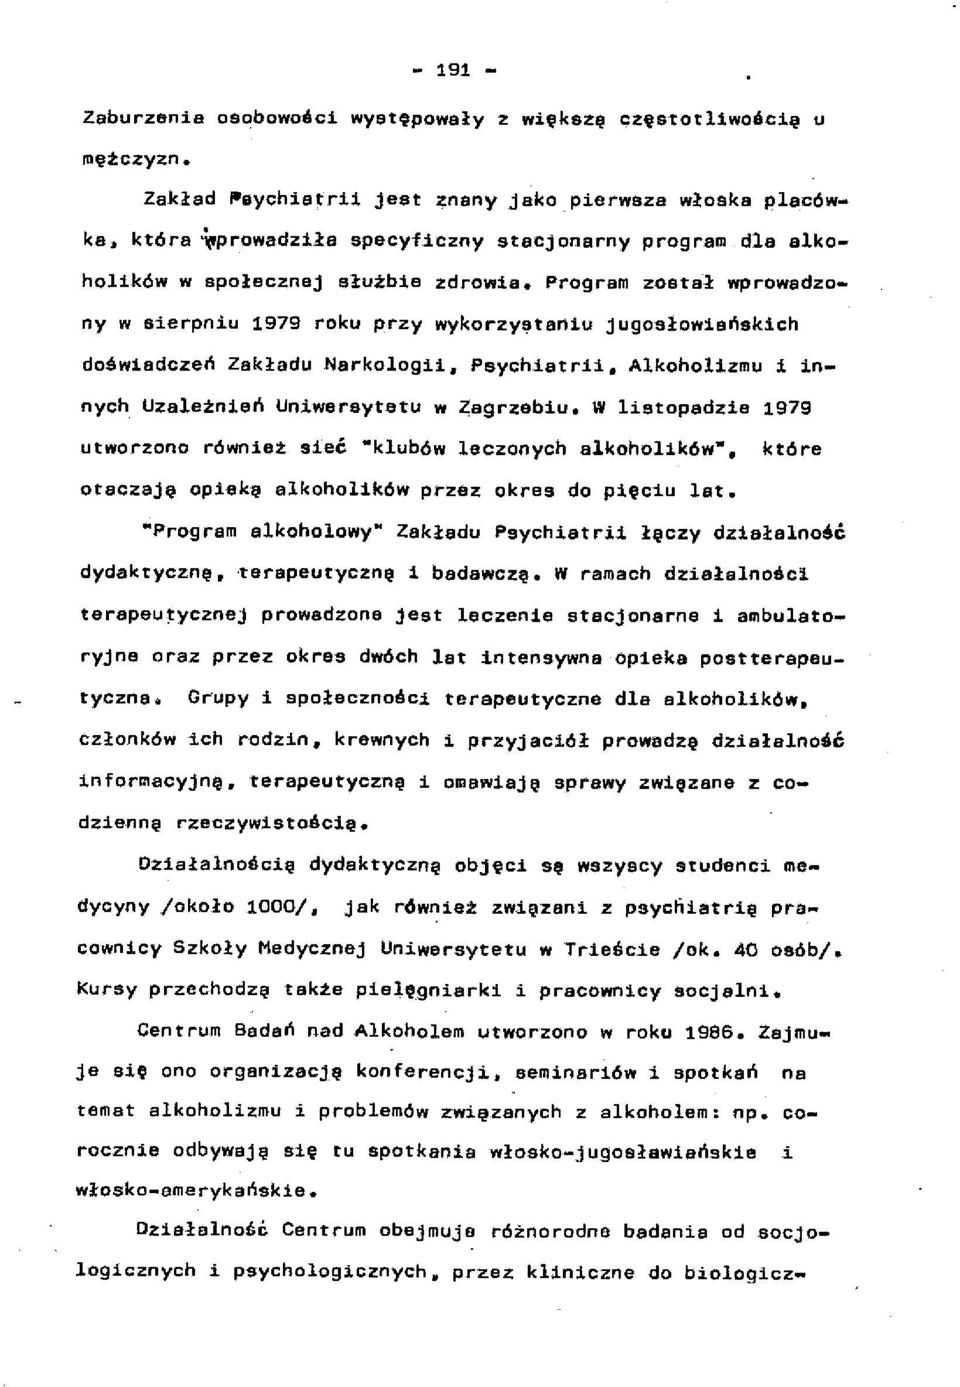 Program zdata-ł wprowadzony w aierpniu 1979 roku przy wykorzy~taniu jugosłowiańskich doświadczeń Zakładu Narkologii» Psychiatrii. Alkoholizmu i innych Uzależnień Uniwersytetu w Zagrzebiu.